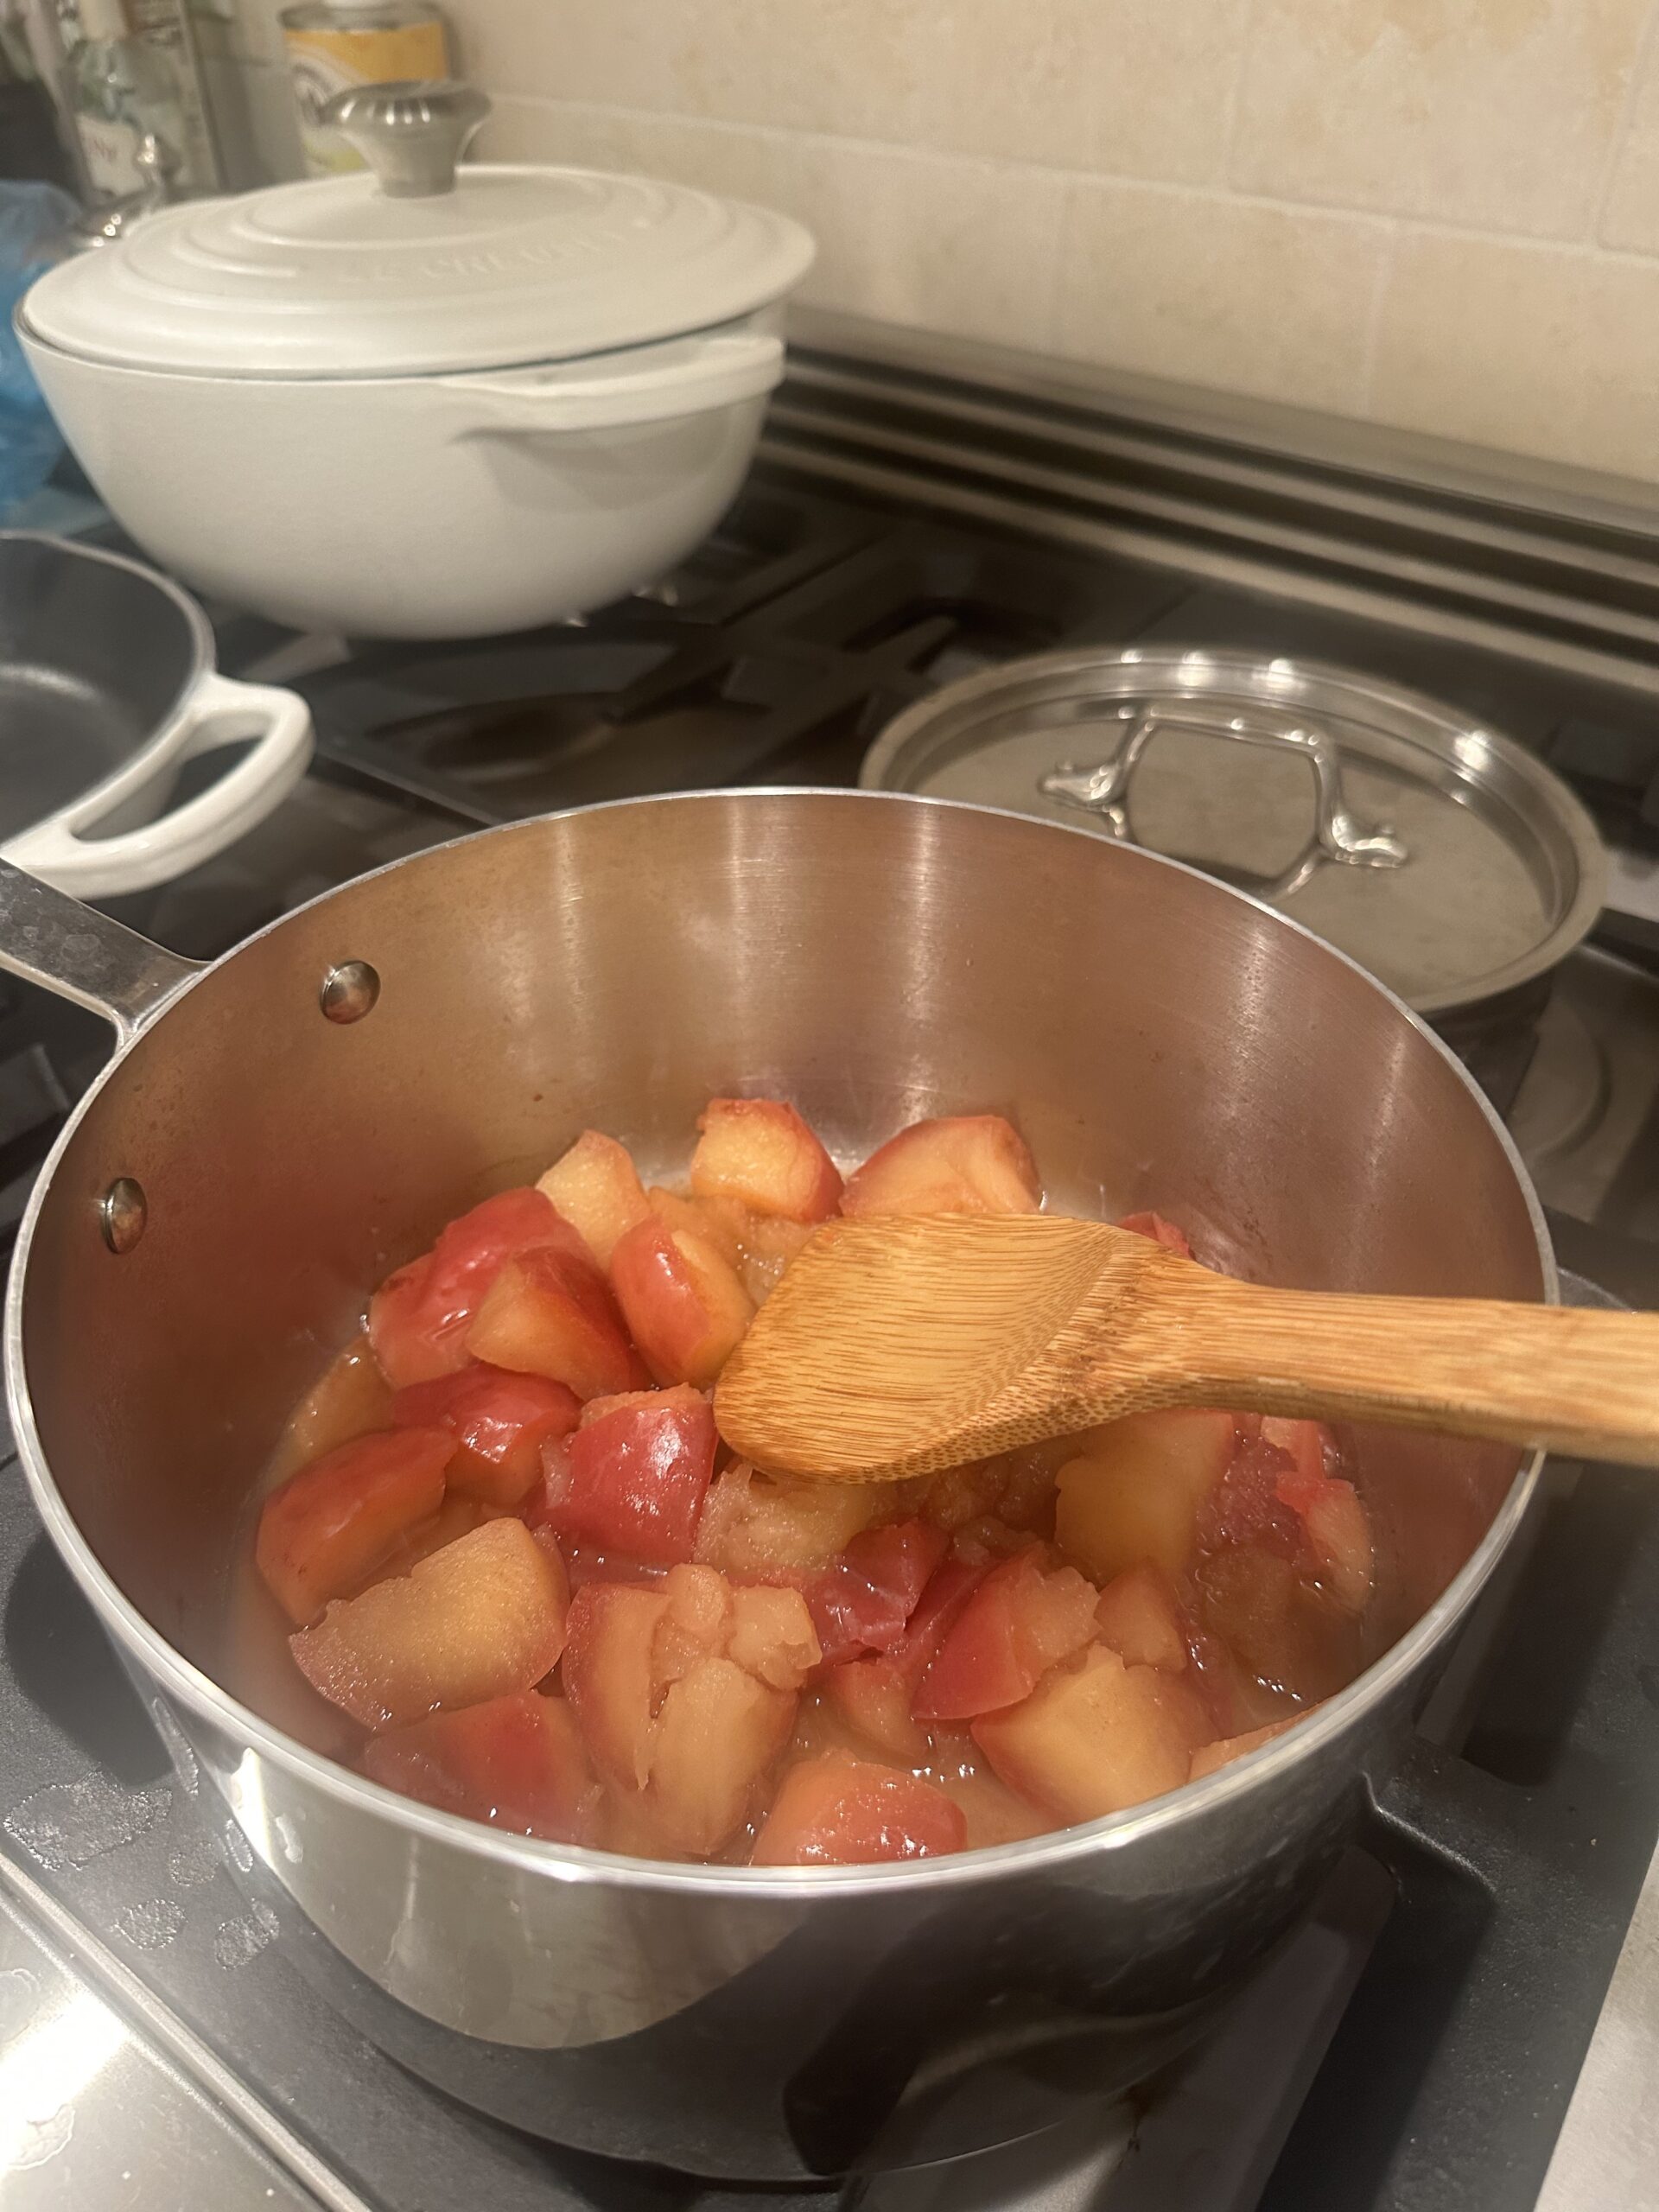 Apples in saucepan